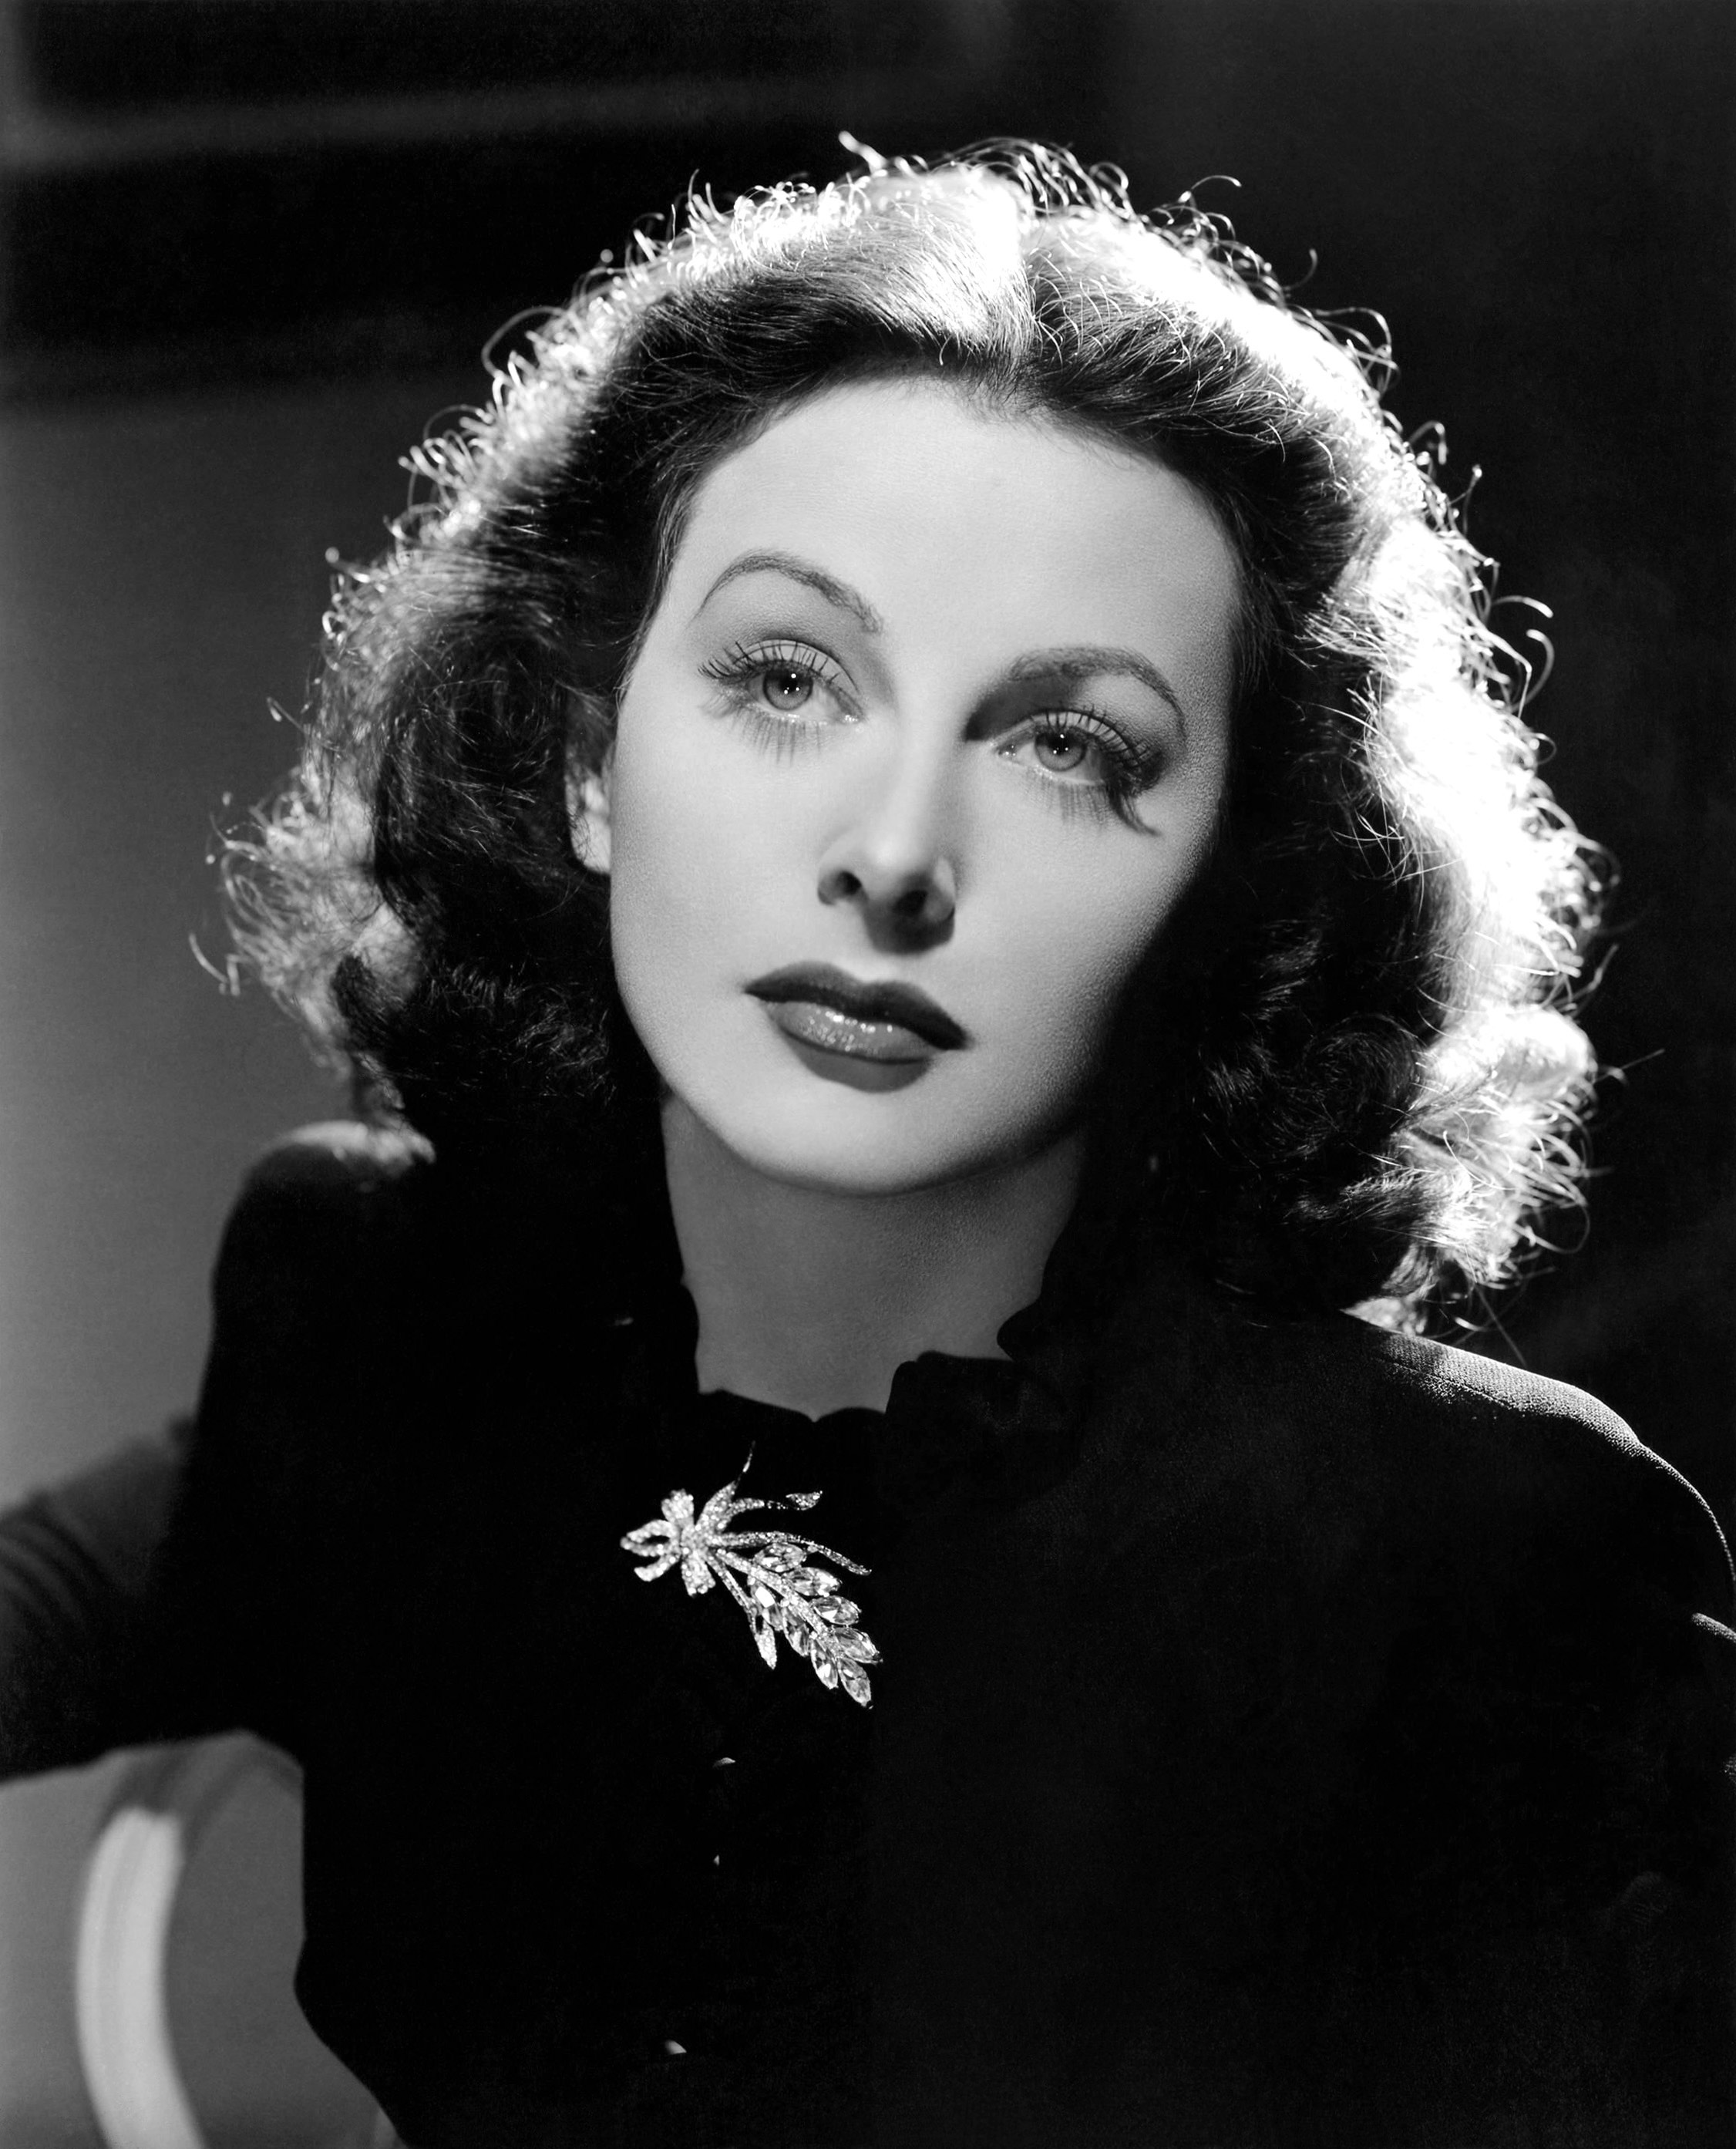 Wer ist Hedy Lamarr? Man sieht ein schwarz-weiß Portrait der Schauspielerin